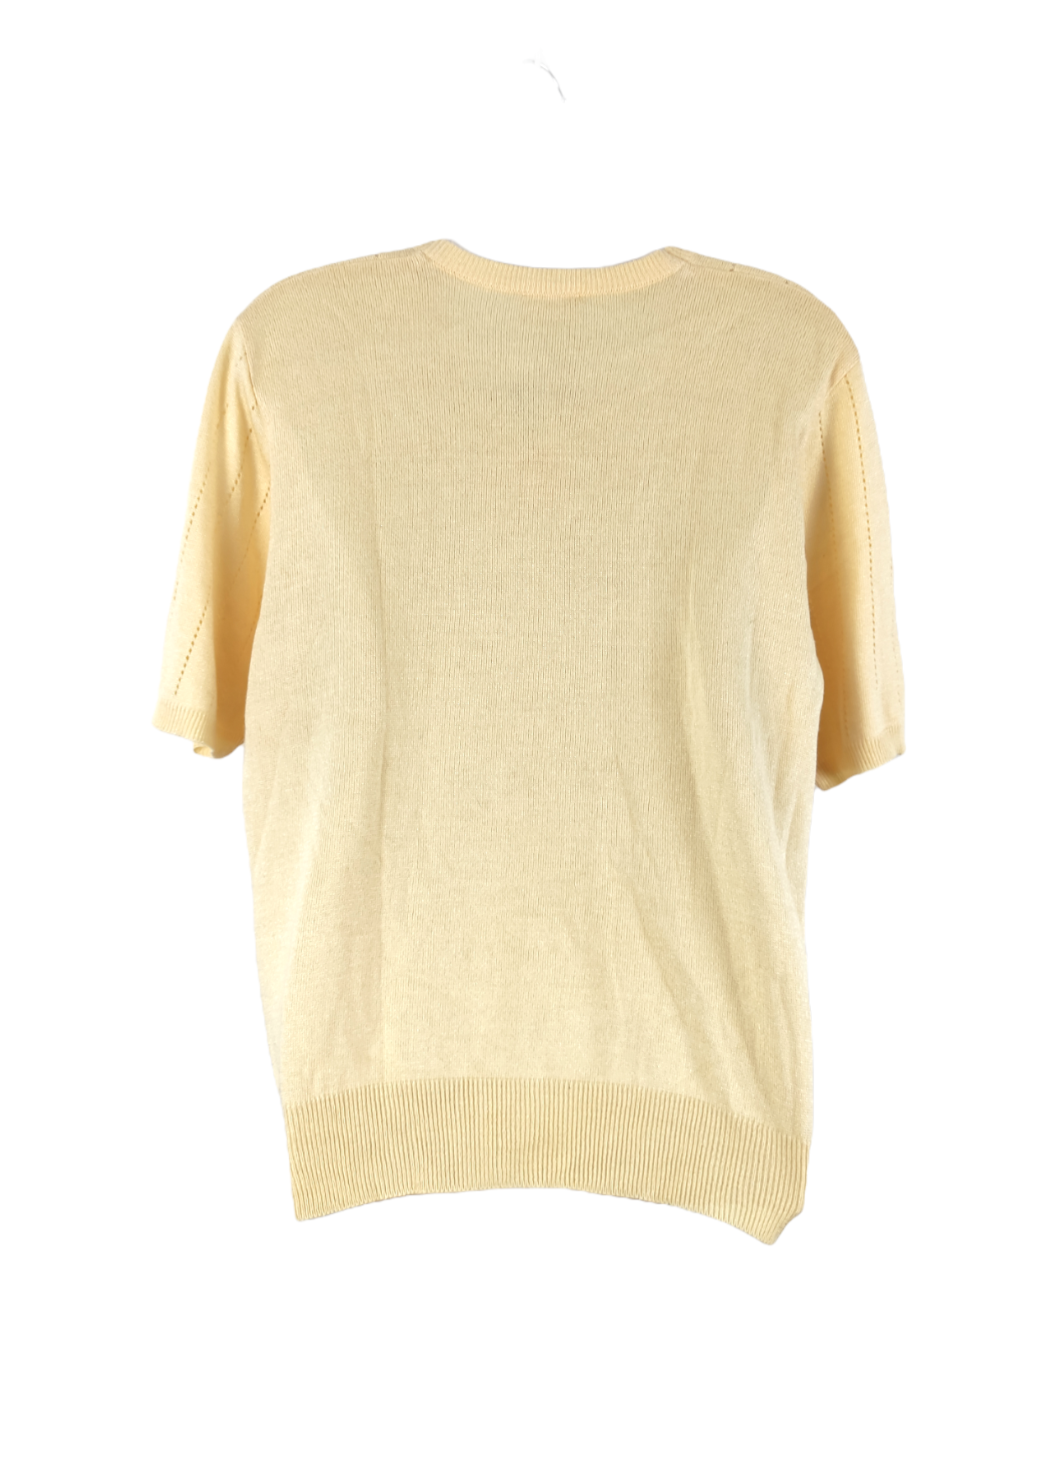 Κοντομάνικη, Πλεκτή Γυναικεία Μπλούζα MENKE σε Παλ Κίτρινο χρώμα (Large)